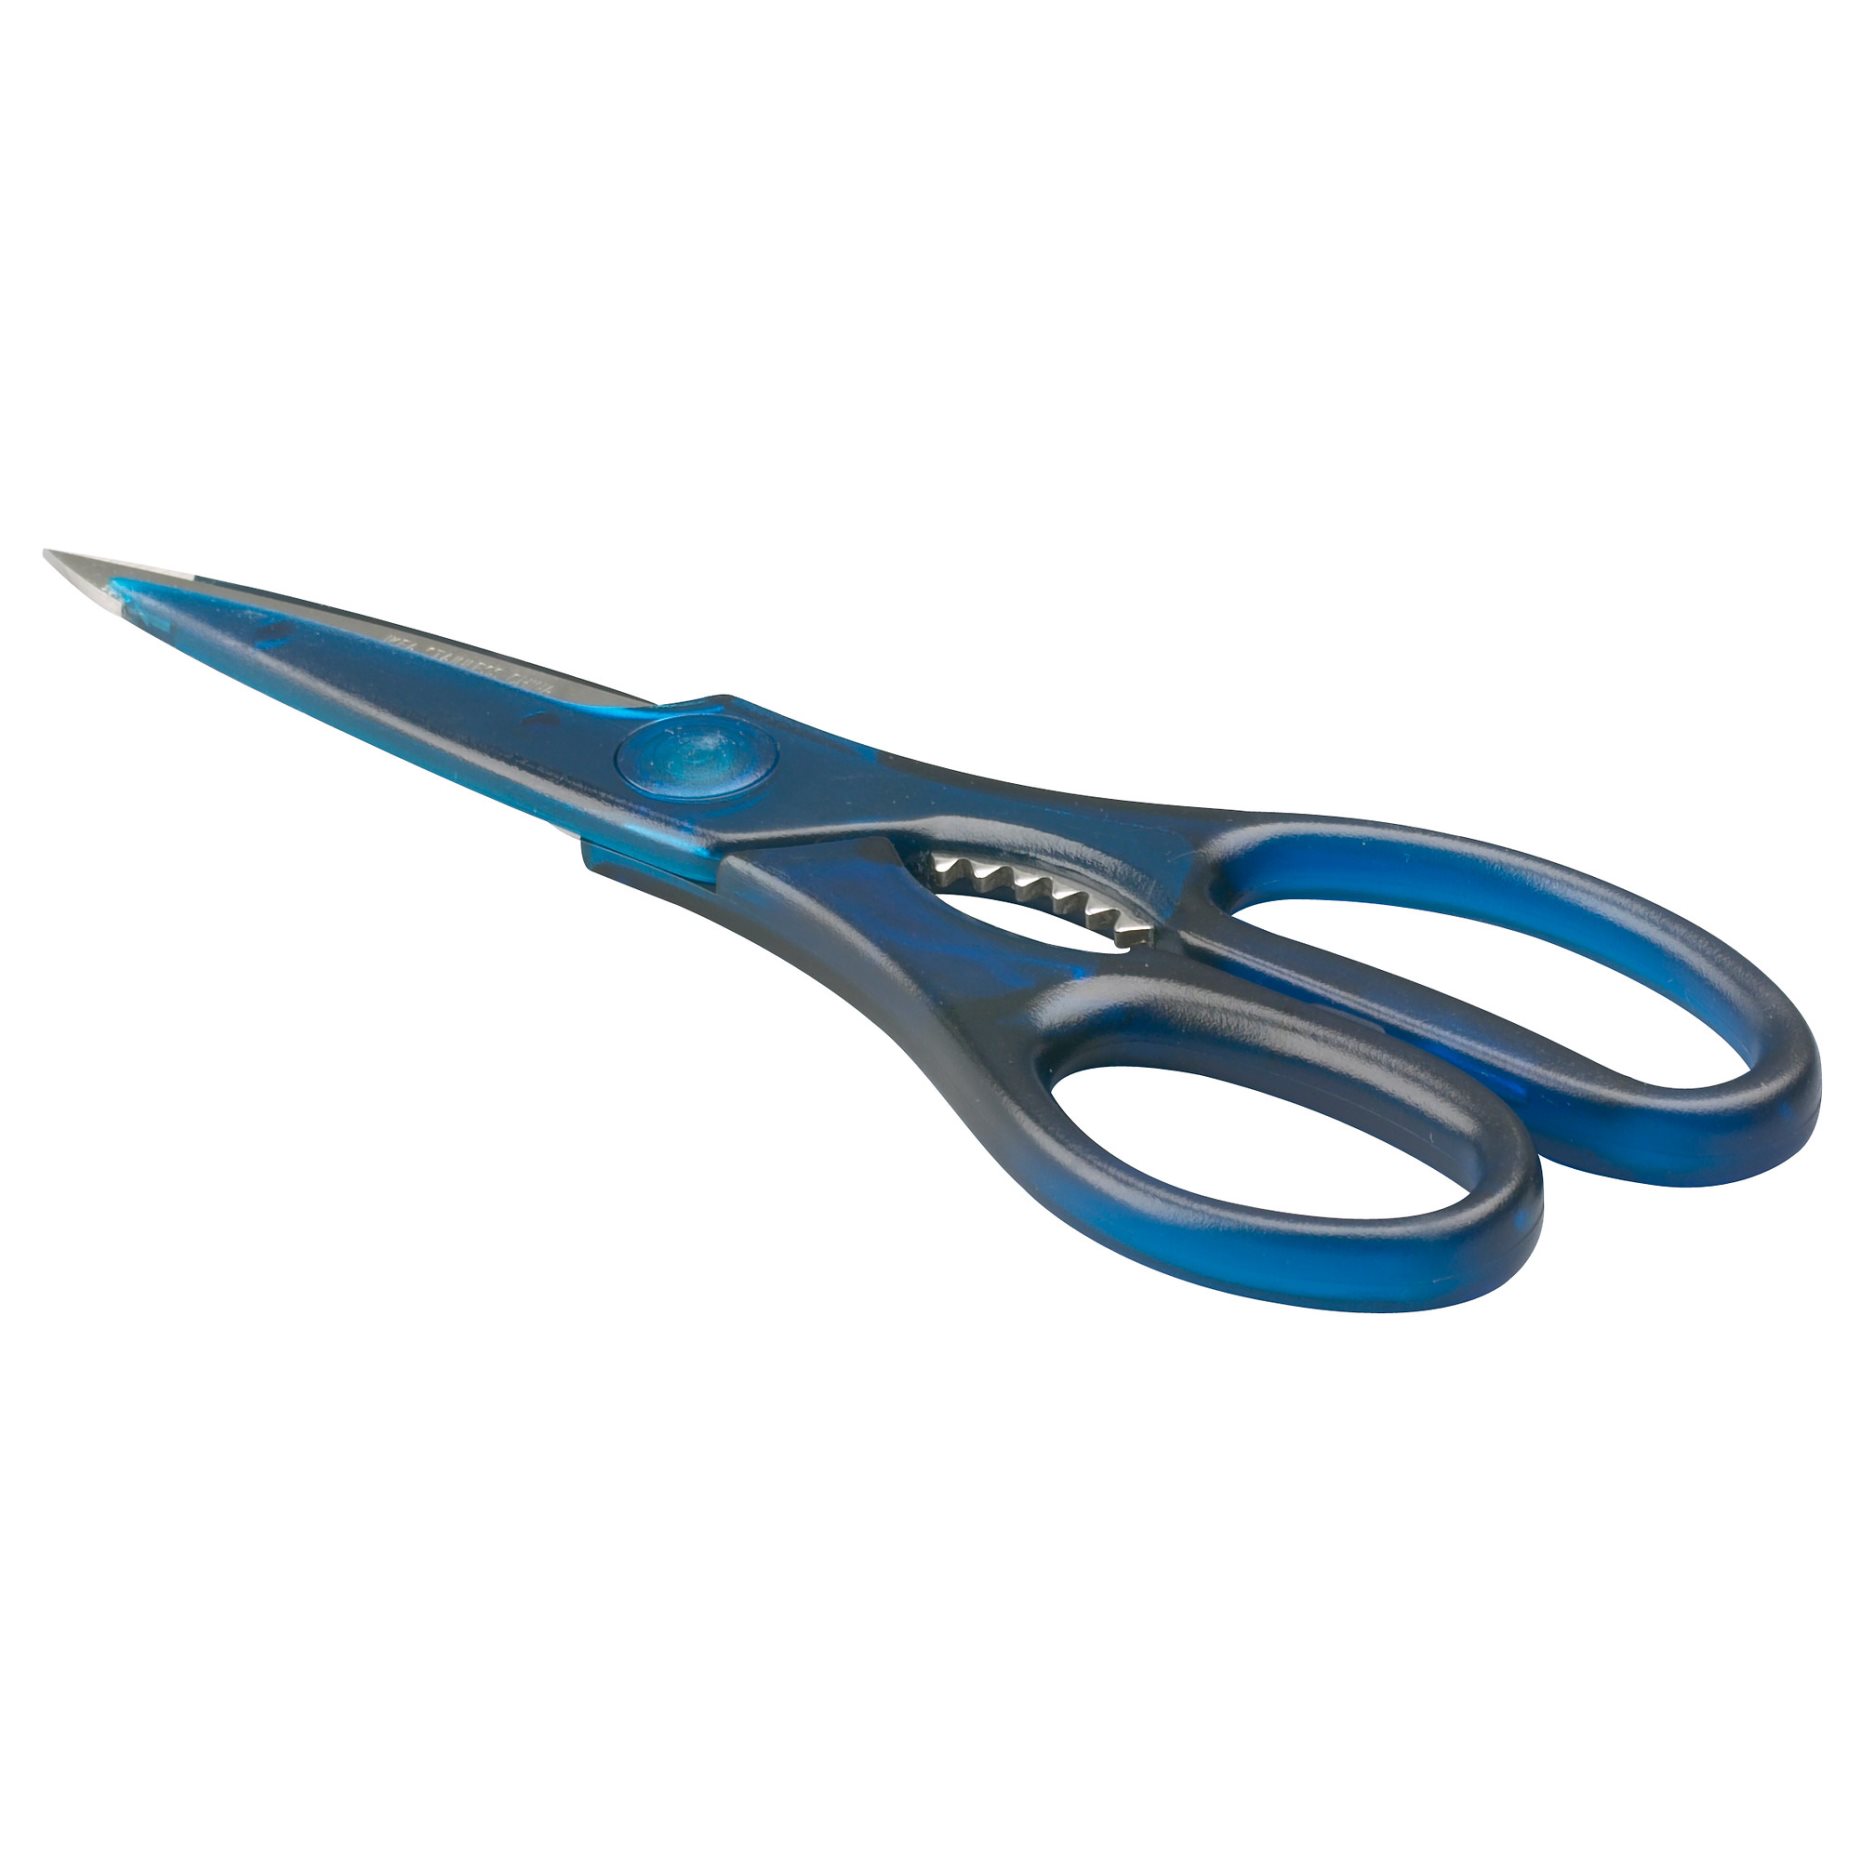 TROJKA, household scissors, 804.486.33